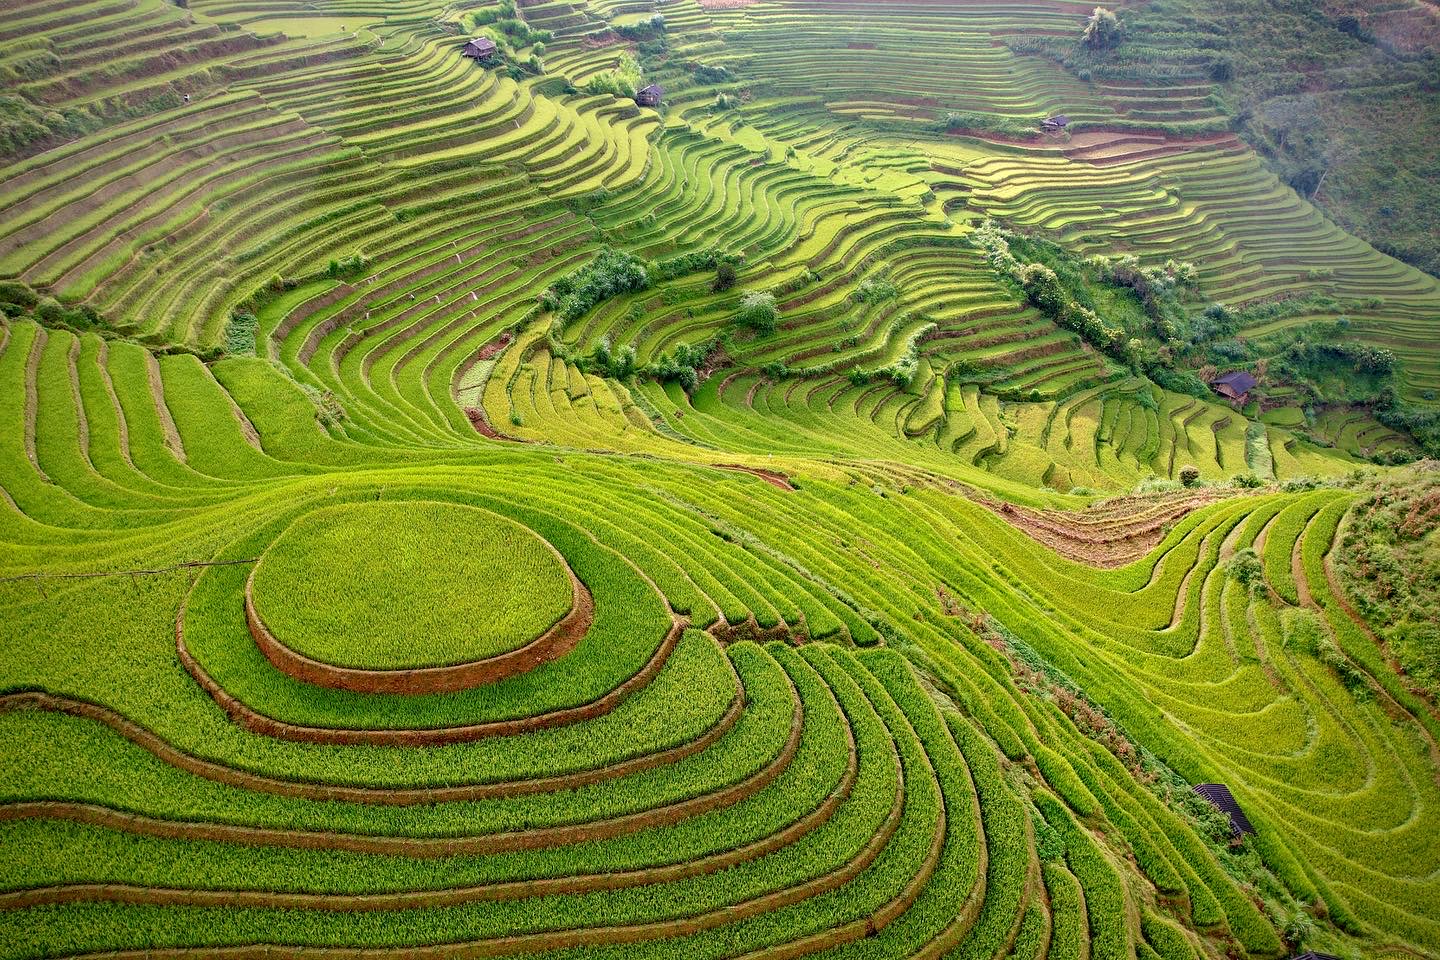 Mu Cang Chai's tarraced field